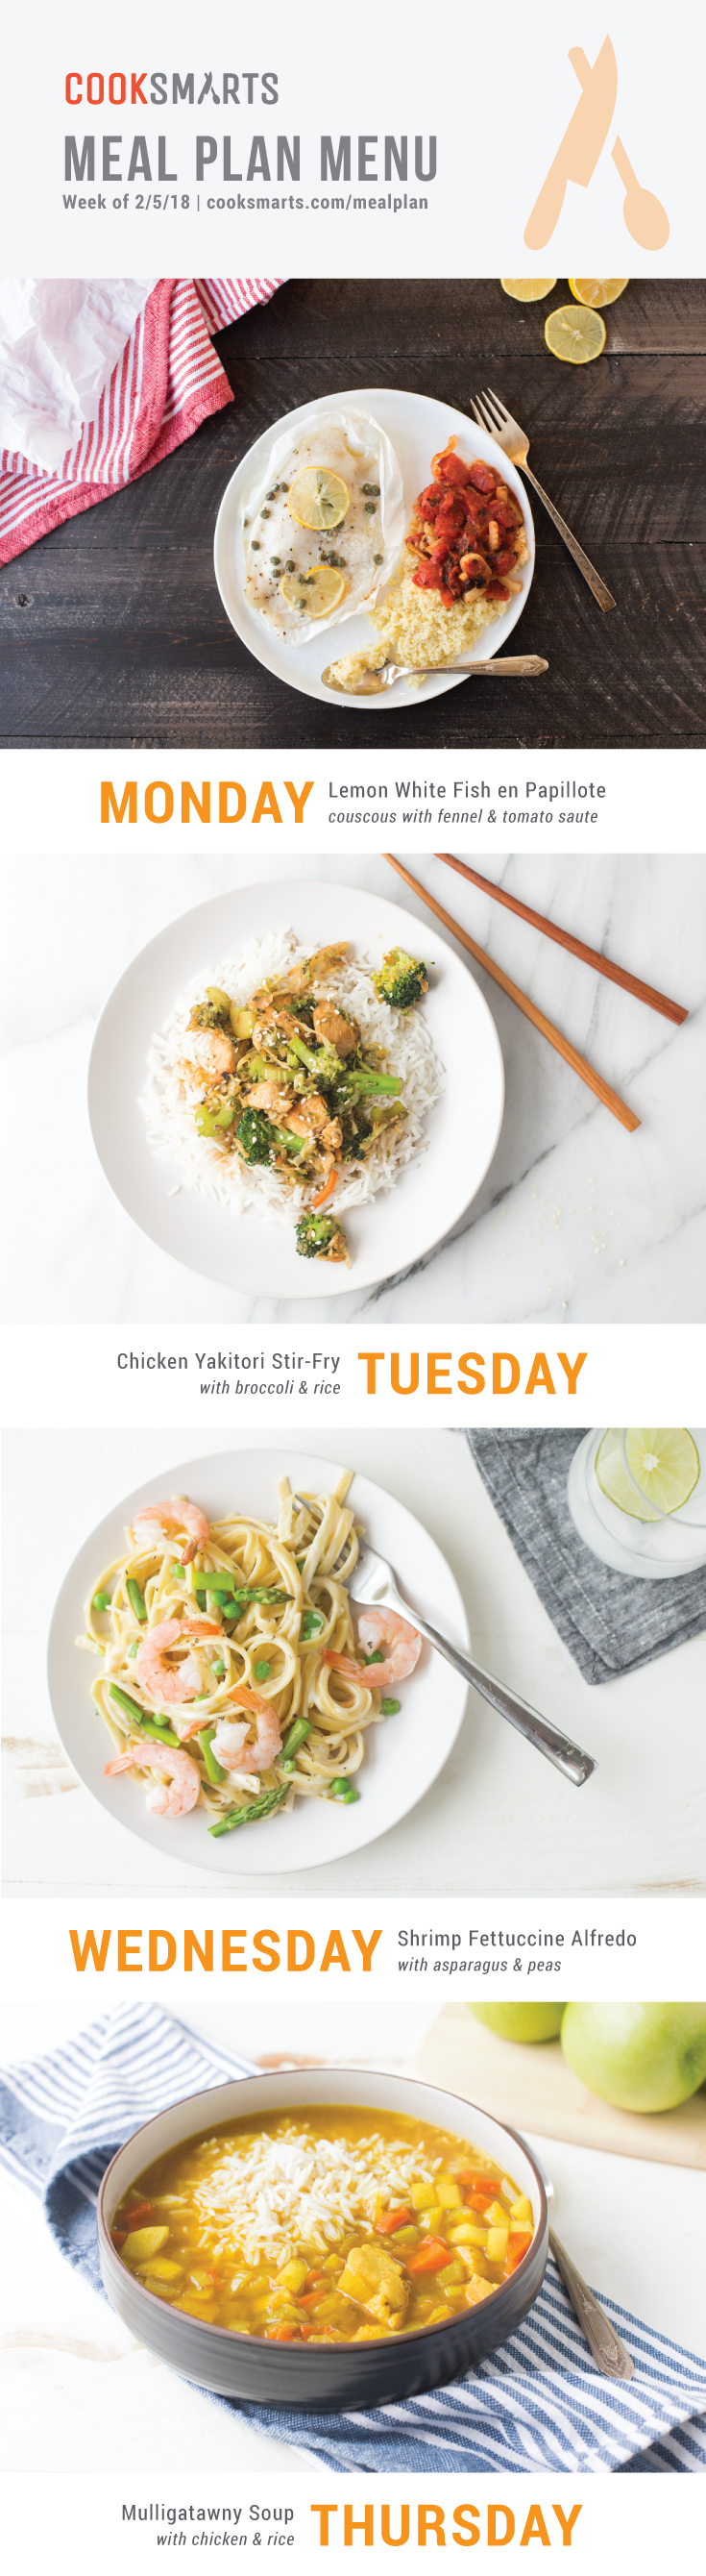 Weekly Meal Plan Menu | Week of 2/5/18 via @cooksmarts